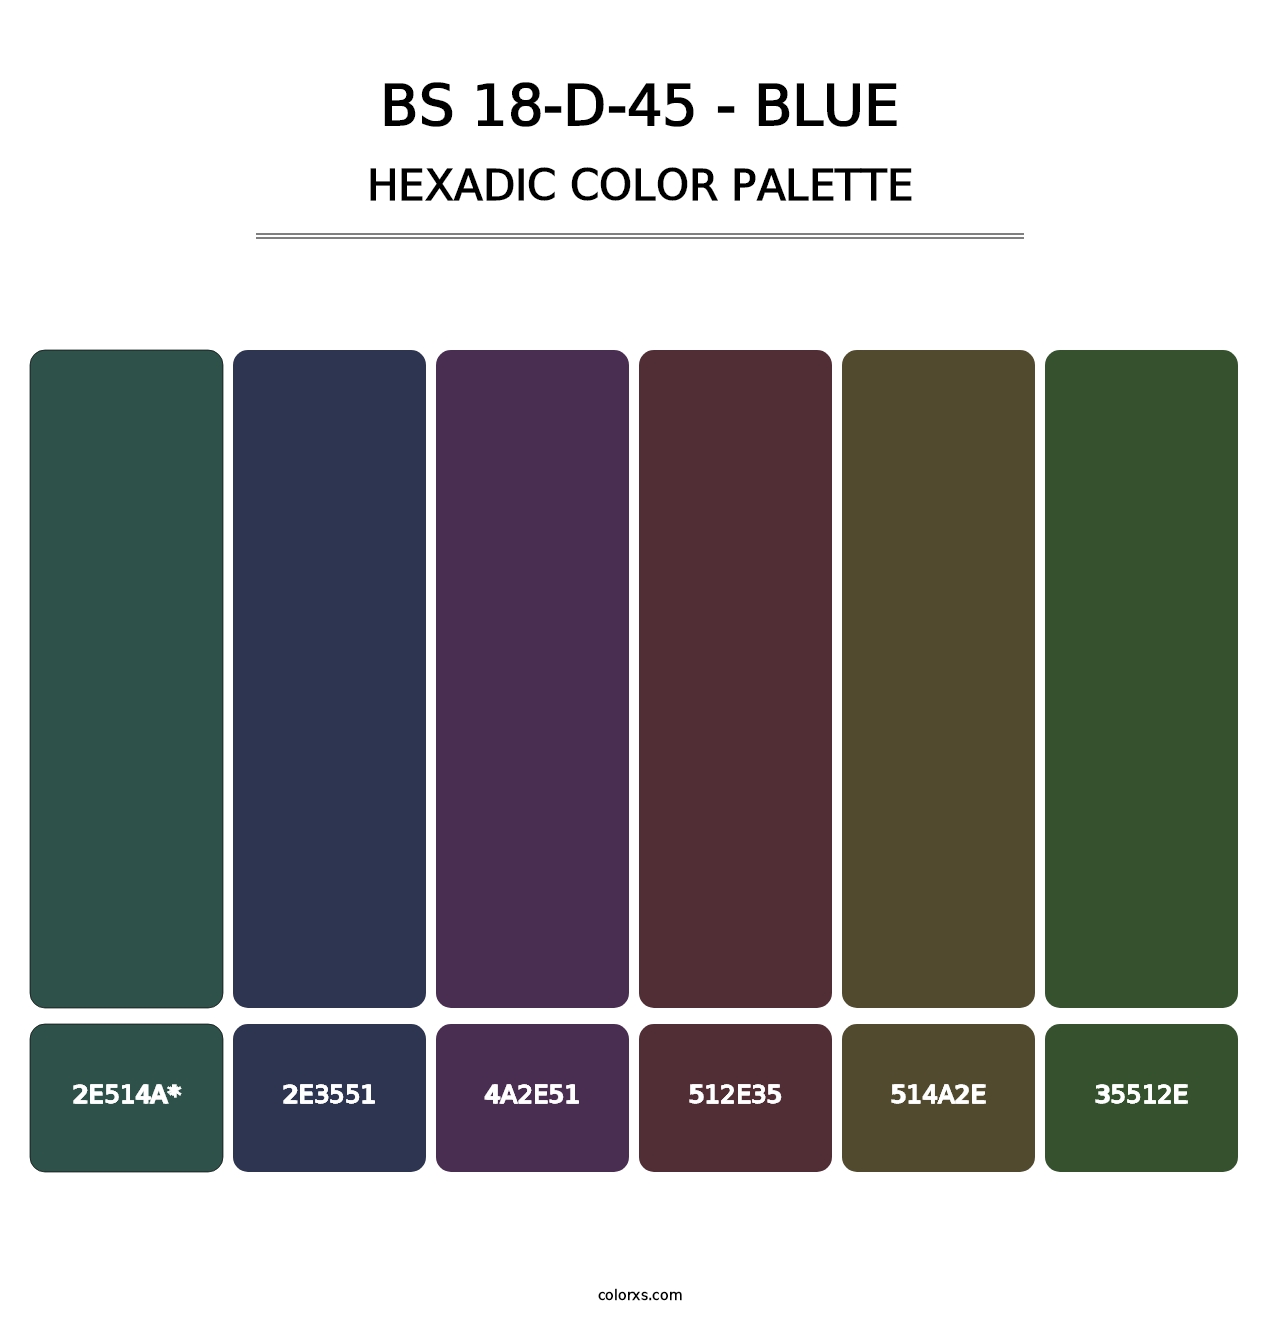 BS 18-D-45 - Blue - Hexadic Color Palette